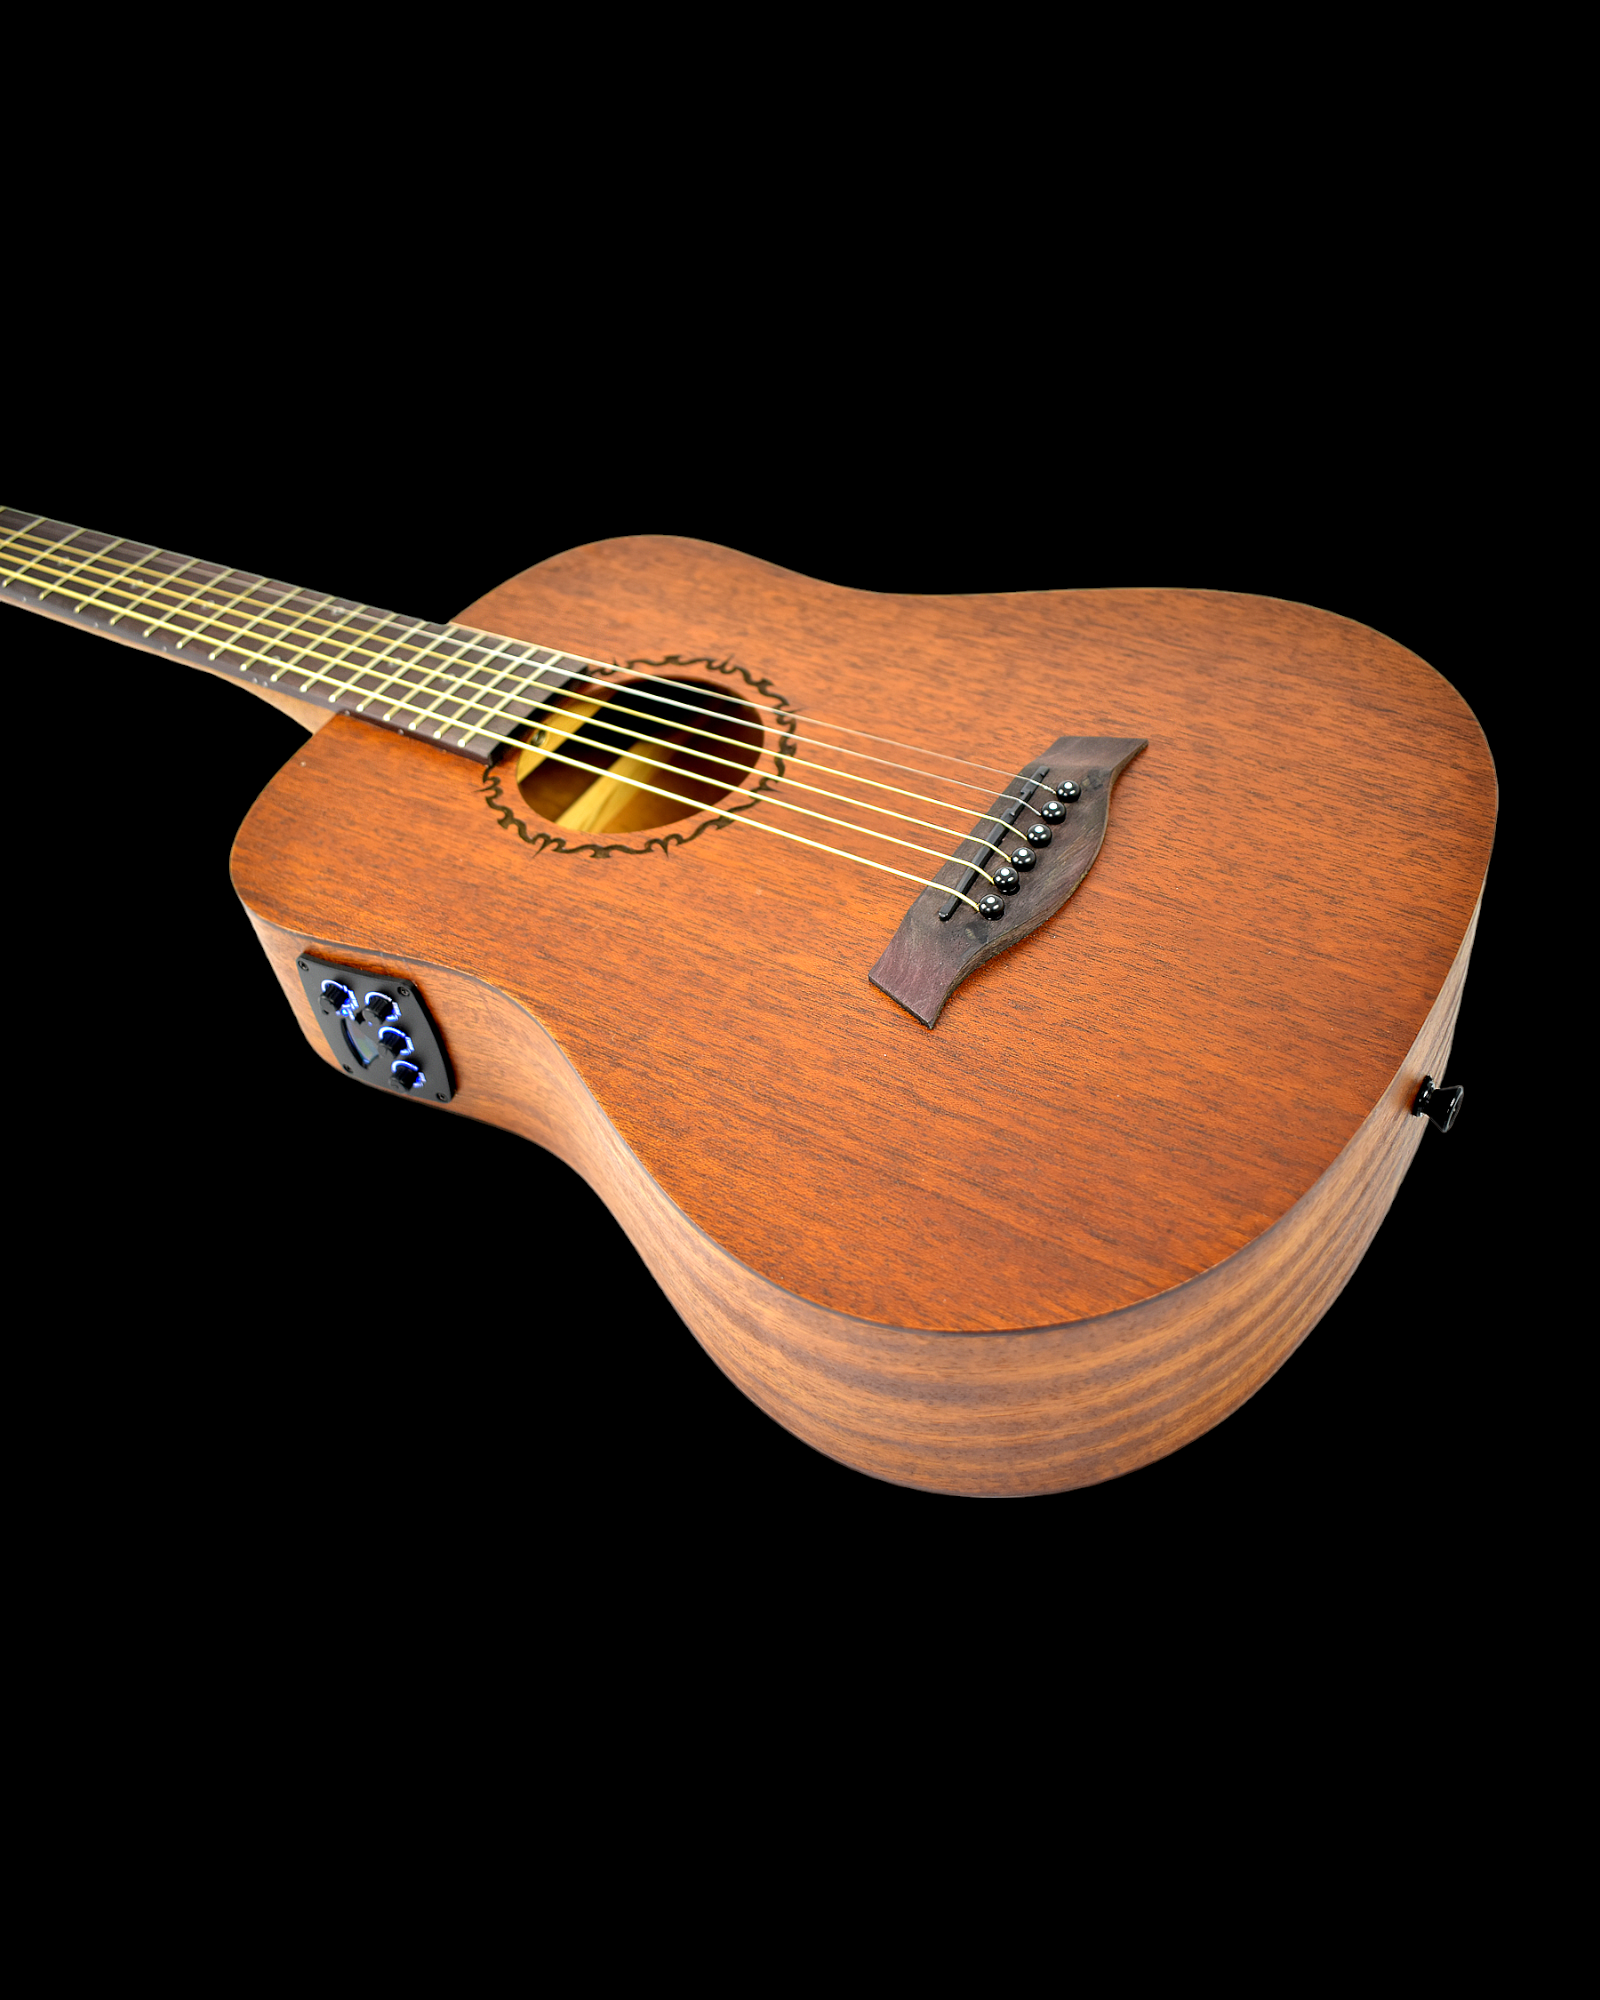 Caraya Safair 36EQ Cheap Acoustic Guitar Review 